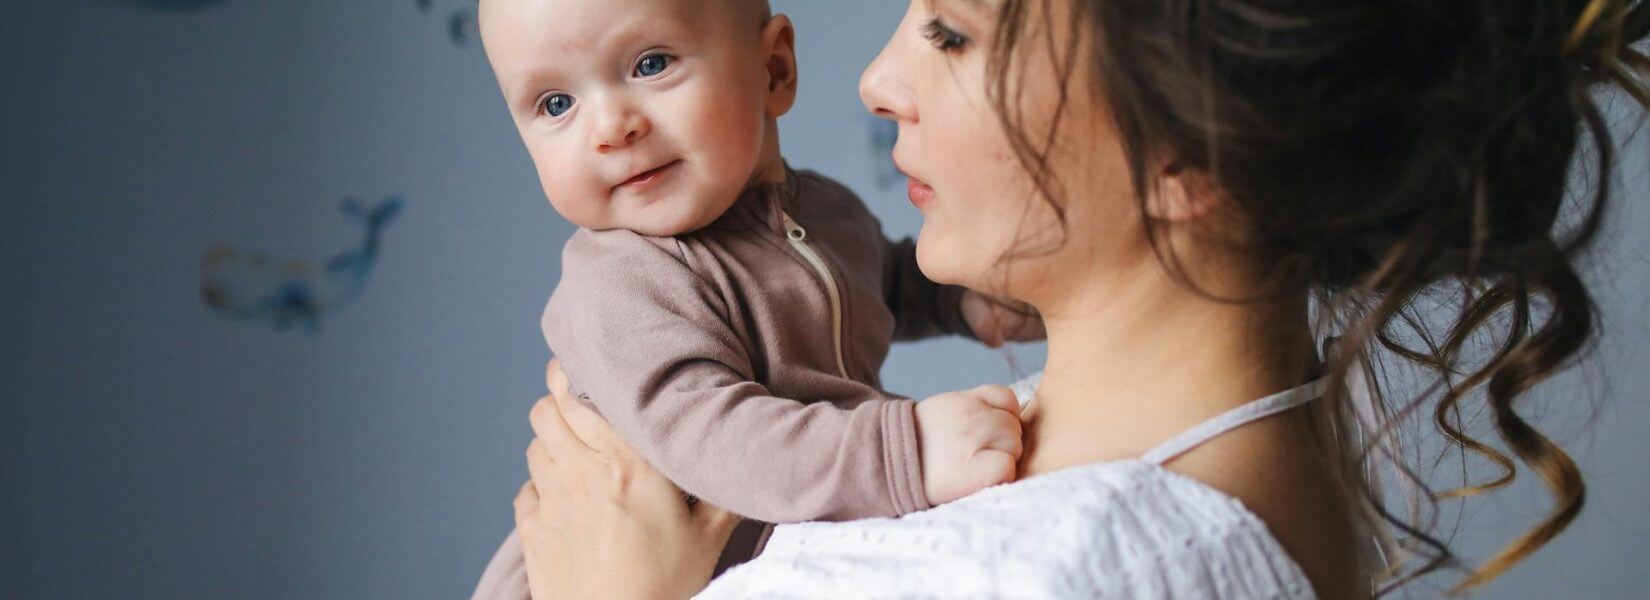 Επίδομα μητρότητας στα 830 ευρώ:  Από σήμερα οι αιτήσεις για αυτοαπασχολούμενες μητέρες